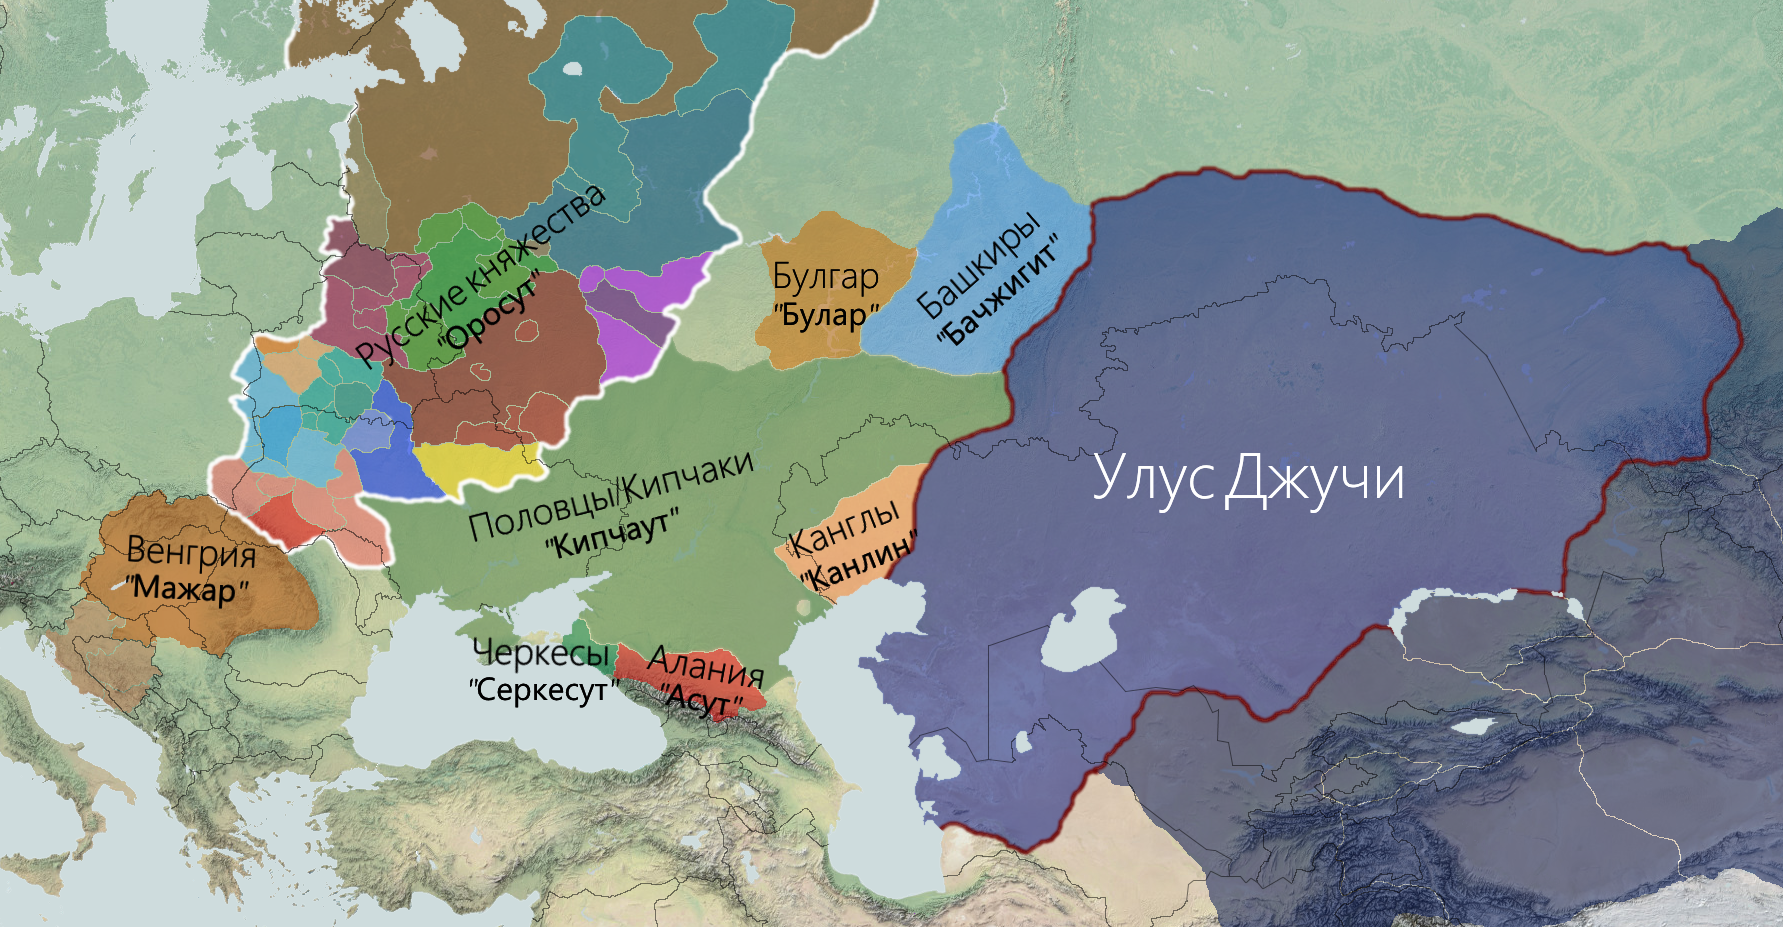 Какие территории вошли в состав орды. Карта золотой орды улус Джучи. Улус Джучи Золотая Орда. Золотая Орда -чагатайский улус. Золотая Орда и монгольская Империя на карте.